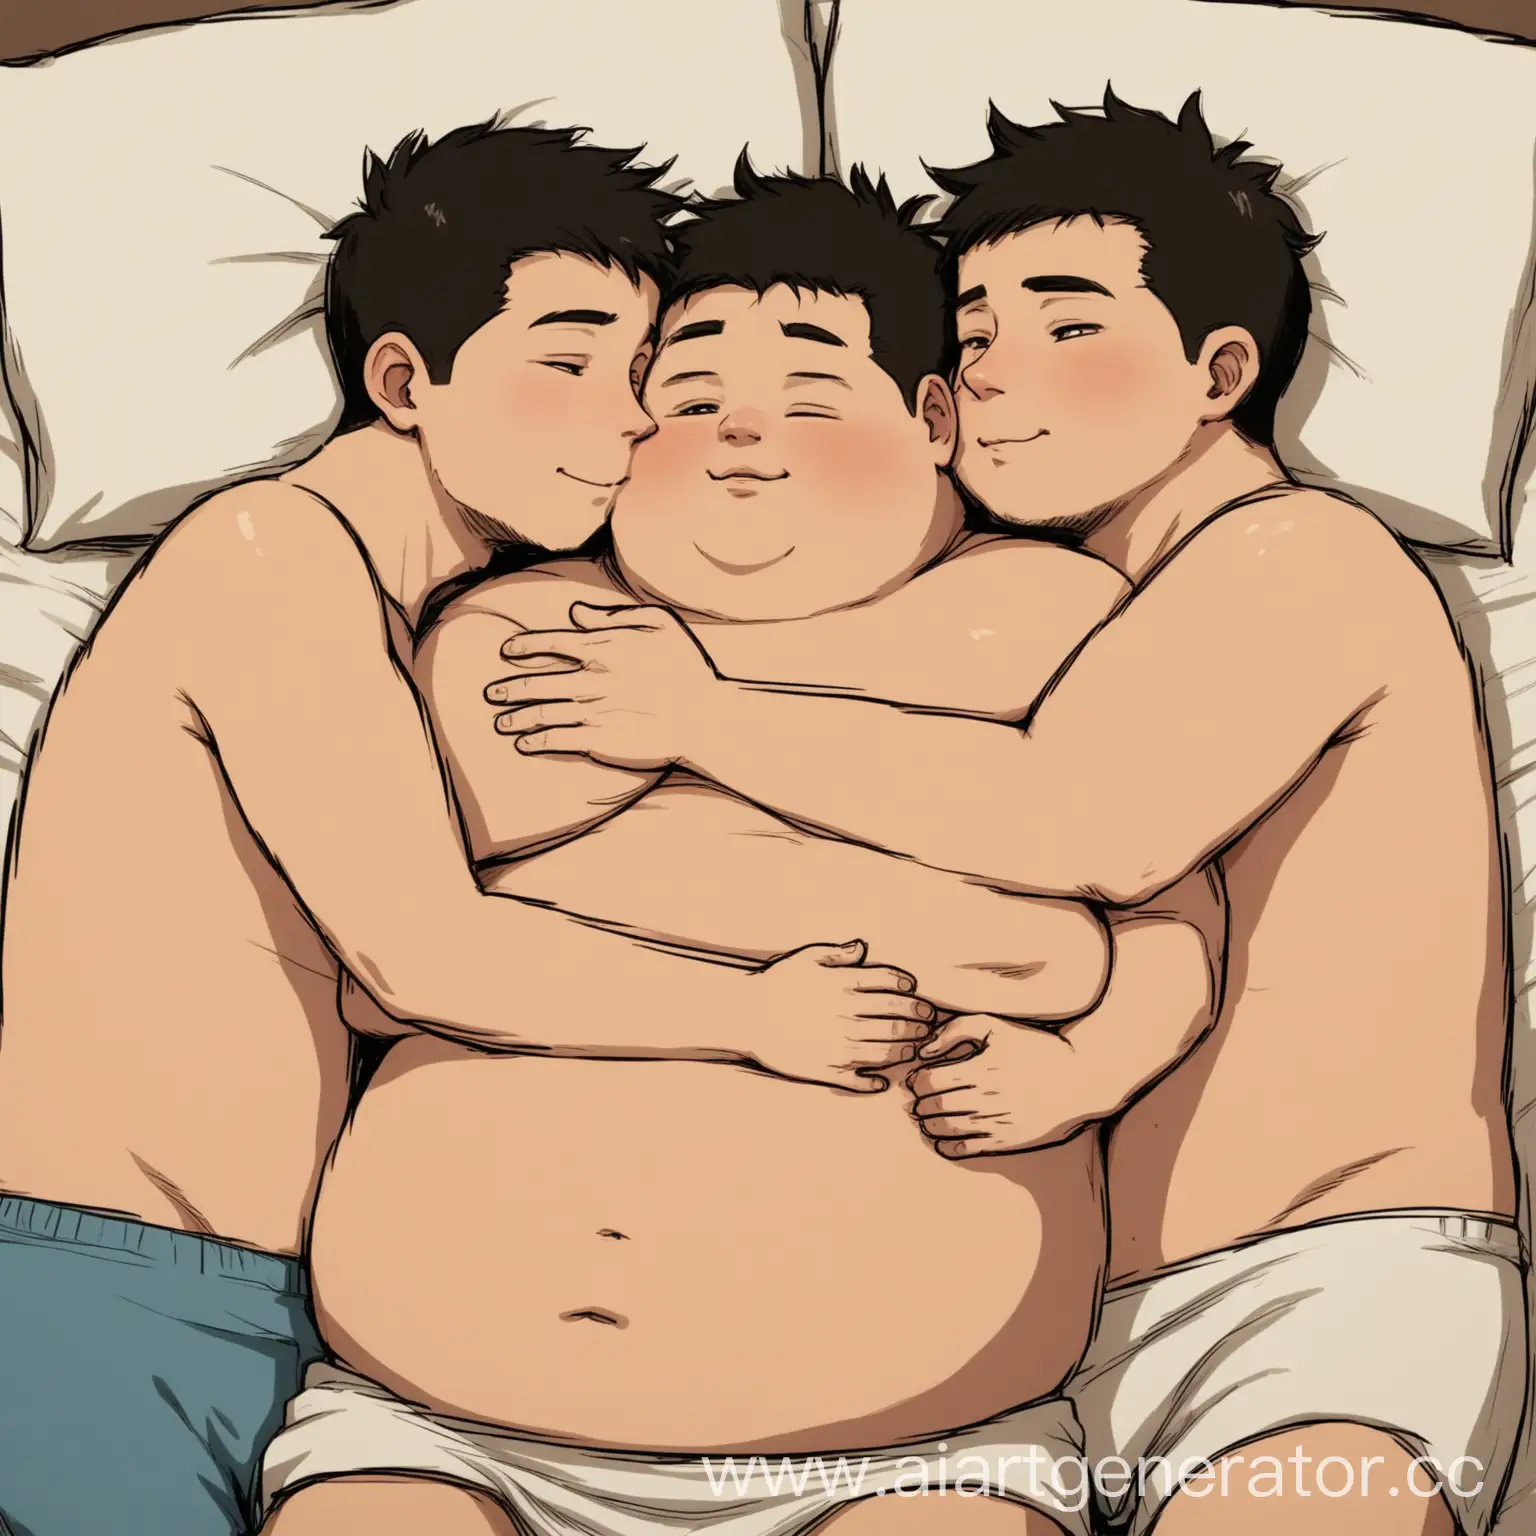 Три парня, один толстый, второй подкаченный и третий длинный в одной кровати лежат вместе и обнимаются